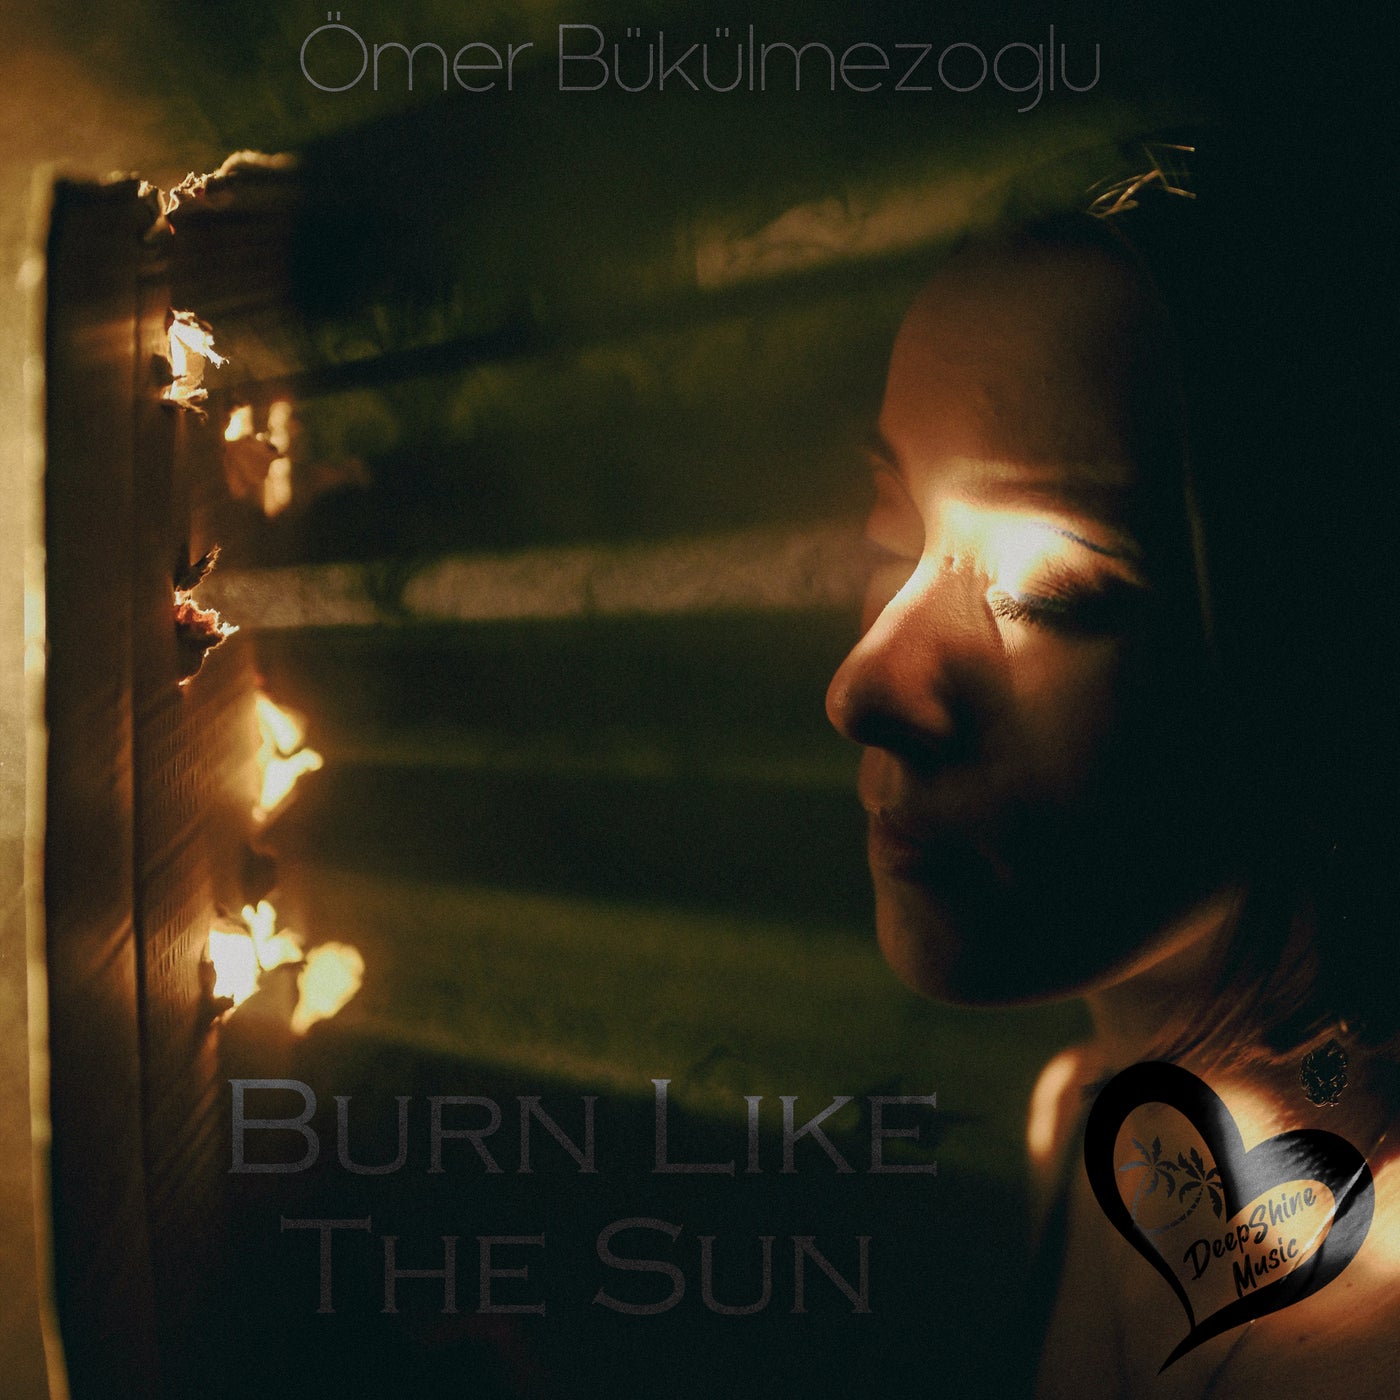 Ömer Bükülmezoğlu - Burn Like the Sun [DeepShine Music]